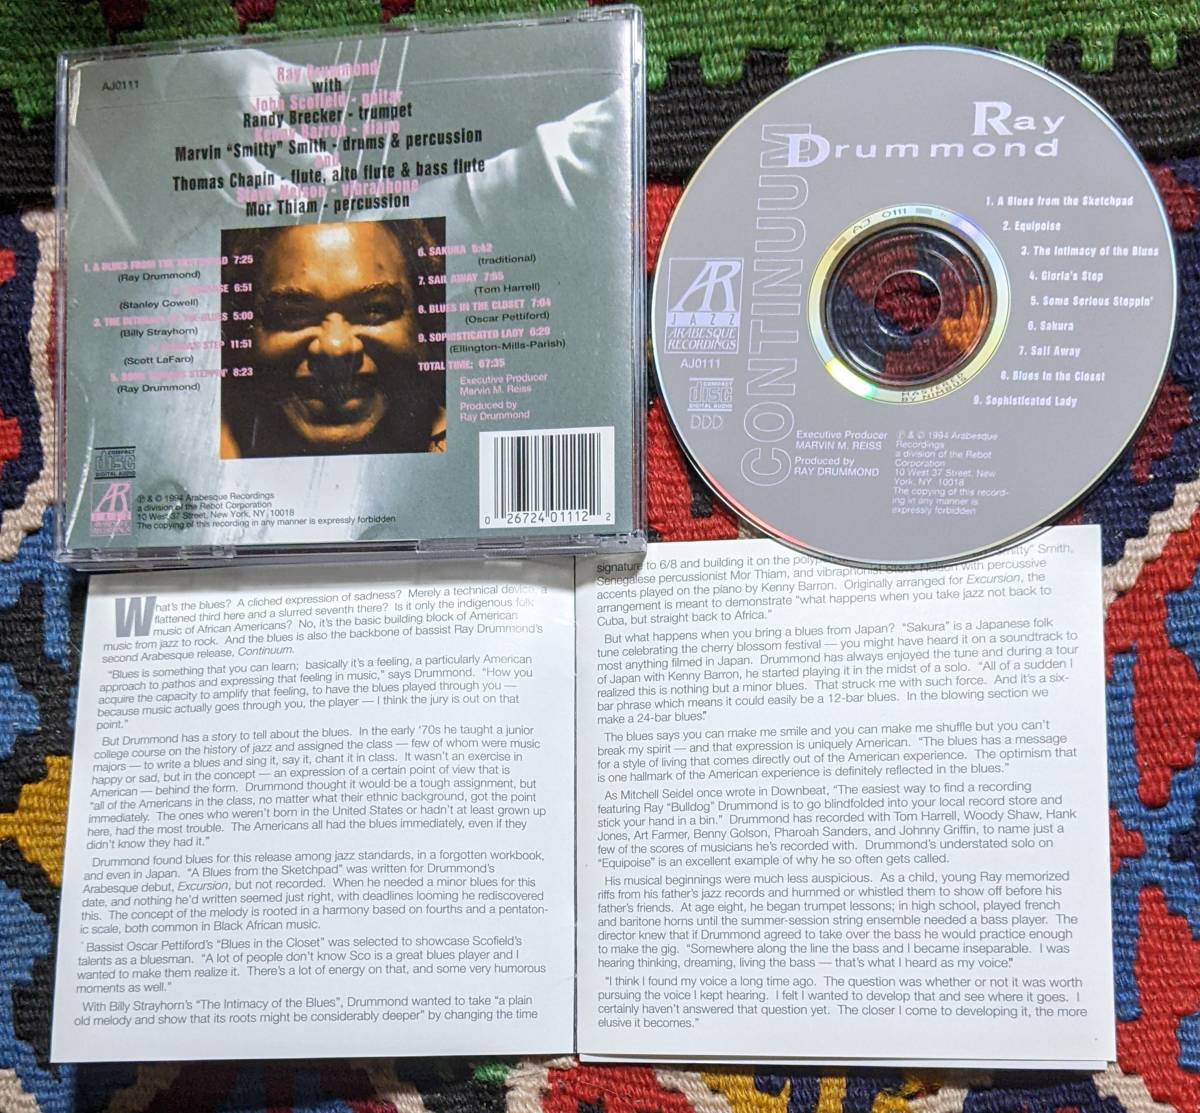 ジョン・スコフィールド参加 90's レイ・ドラモンド(b) Ray Drummond (CD)/ Continuum 　Arabesque Jazz AJ0111 1994年_画像5